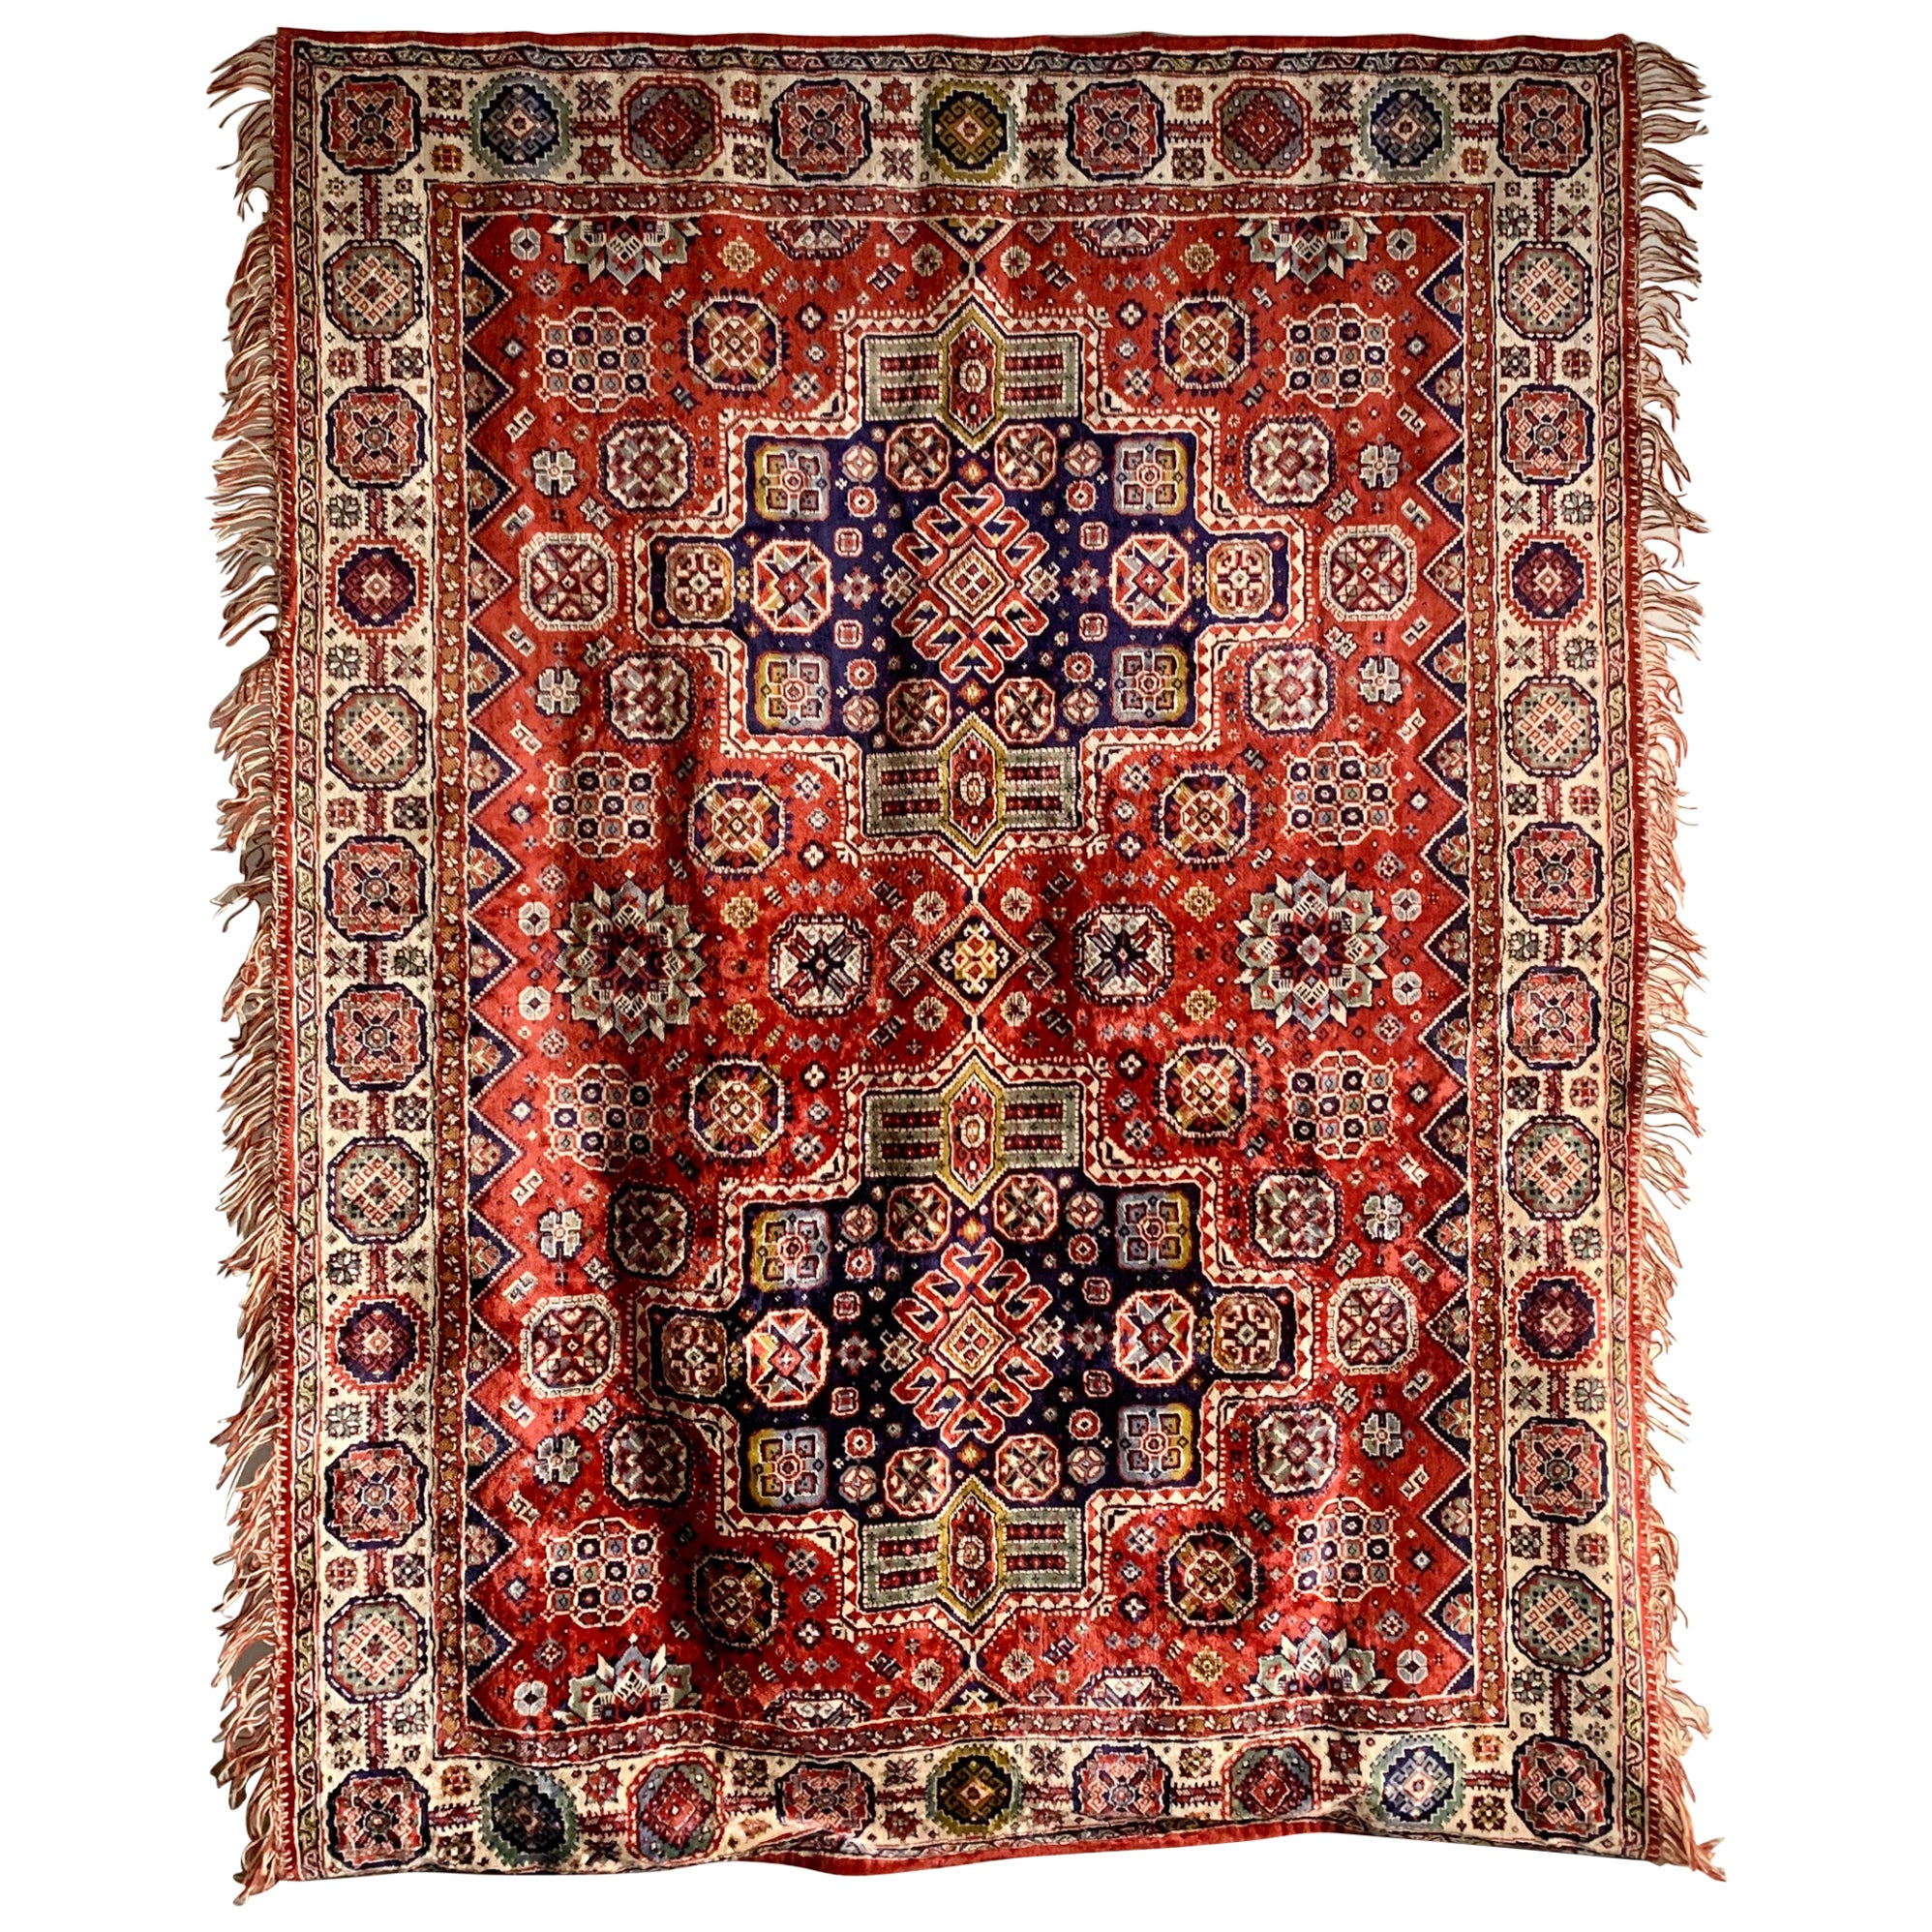 Vintage Oriental Duvet Cover or Carpet For Sale